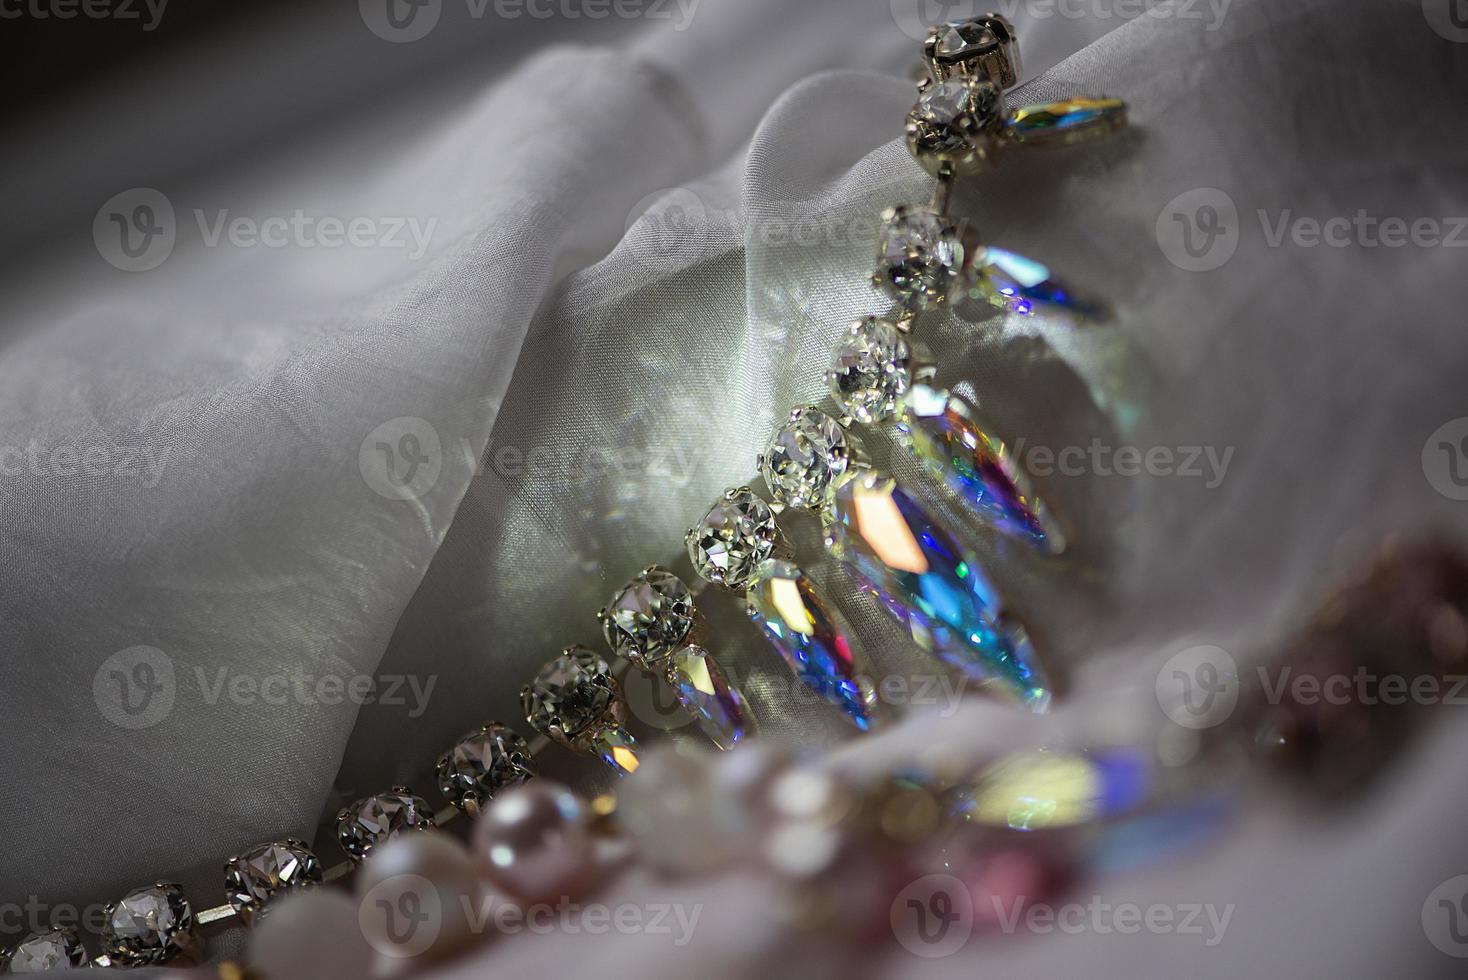 close-up details van ketting en oorbellen met swarovski kristal foto